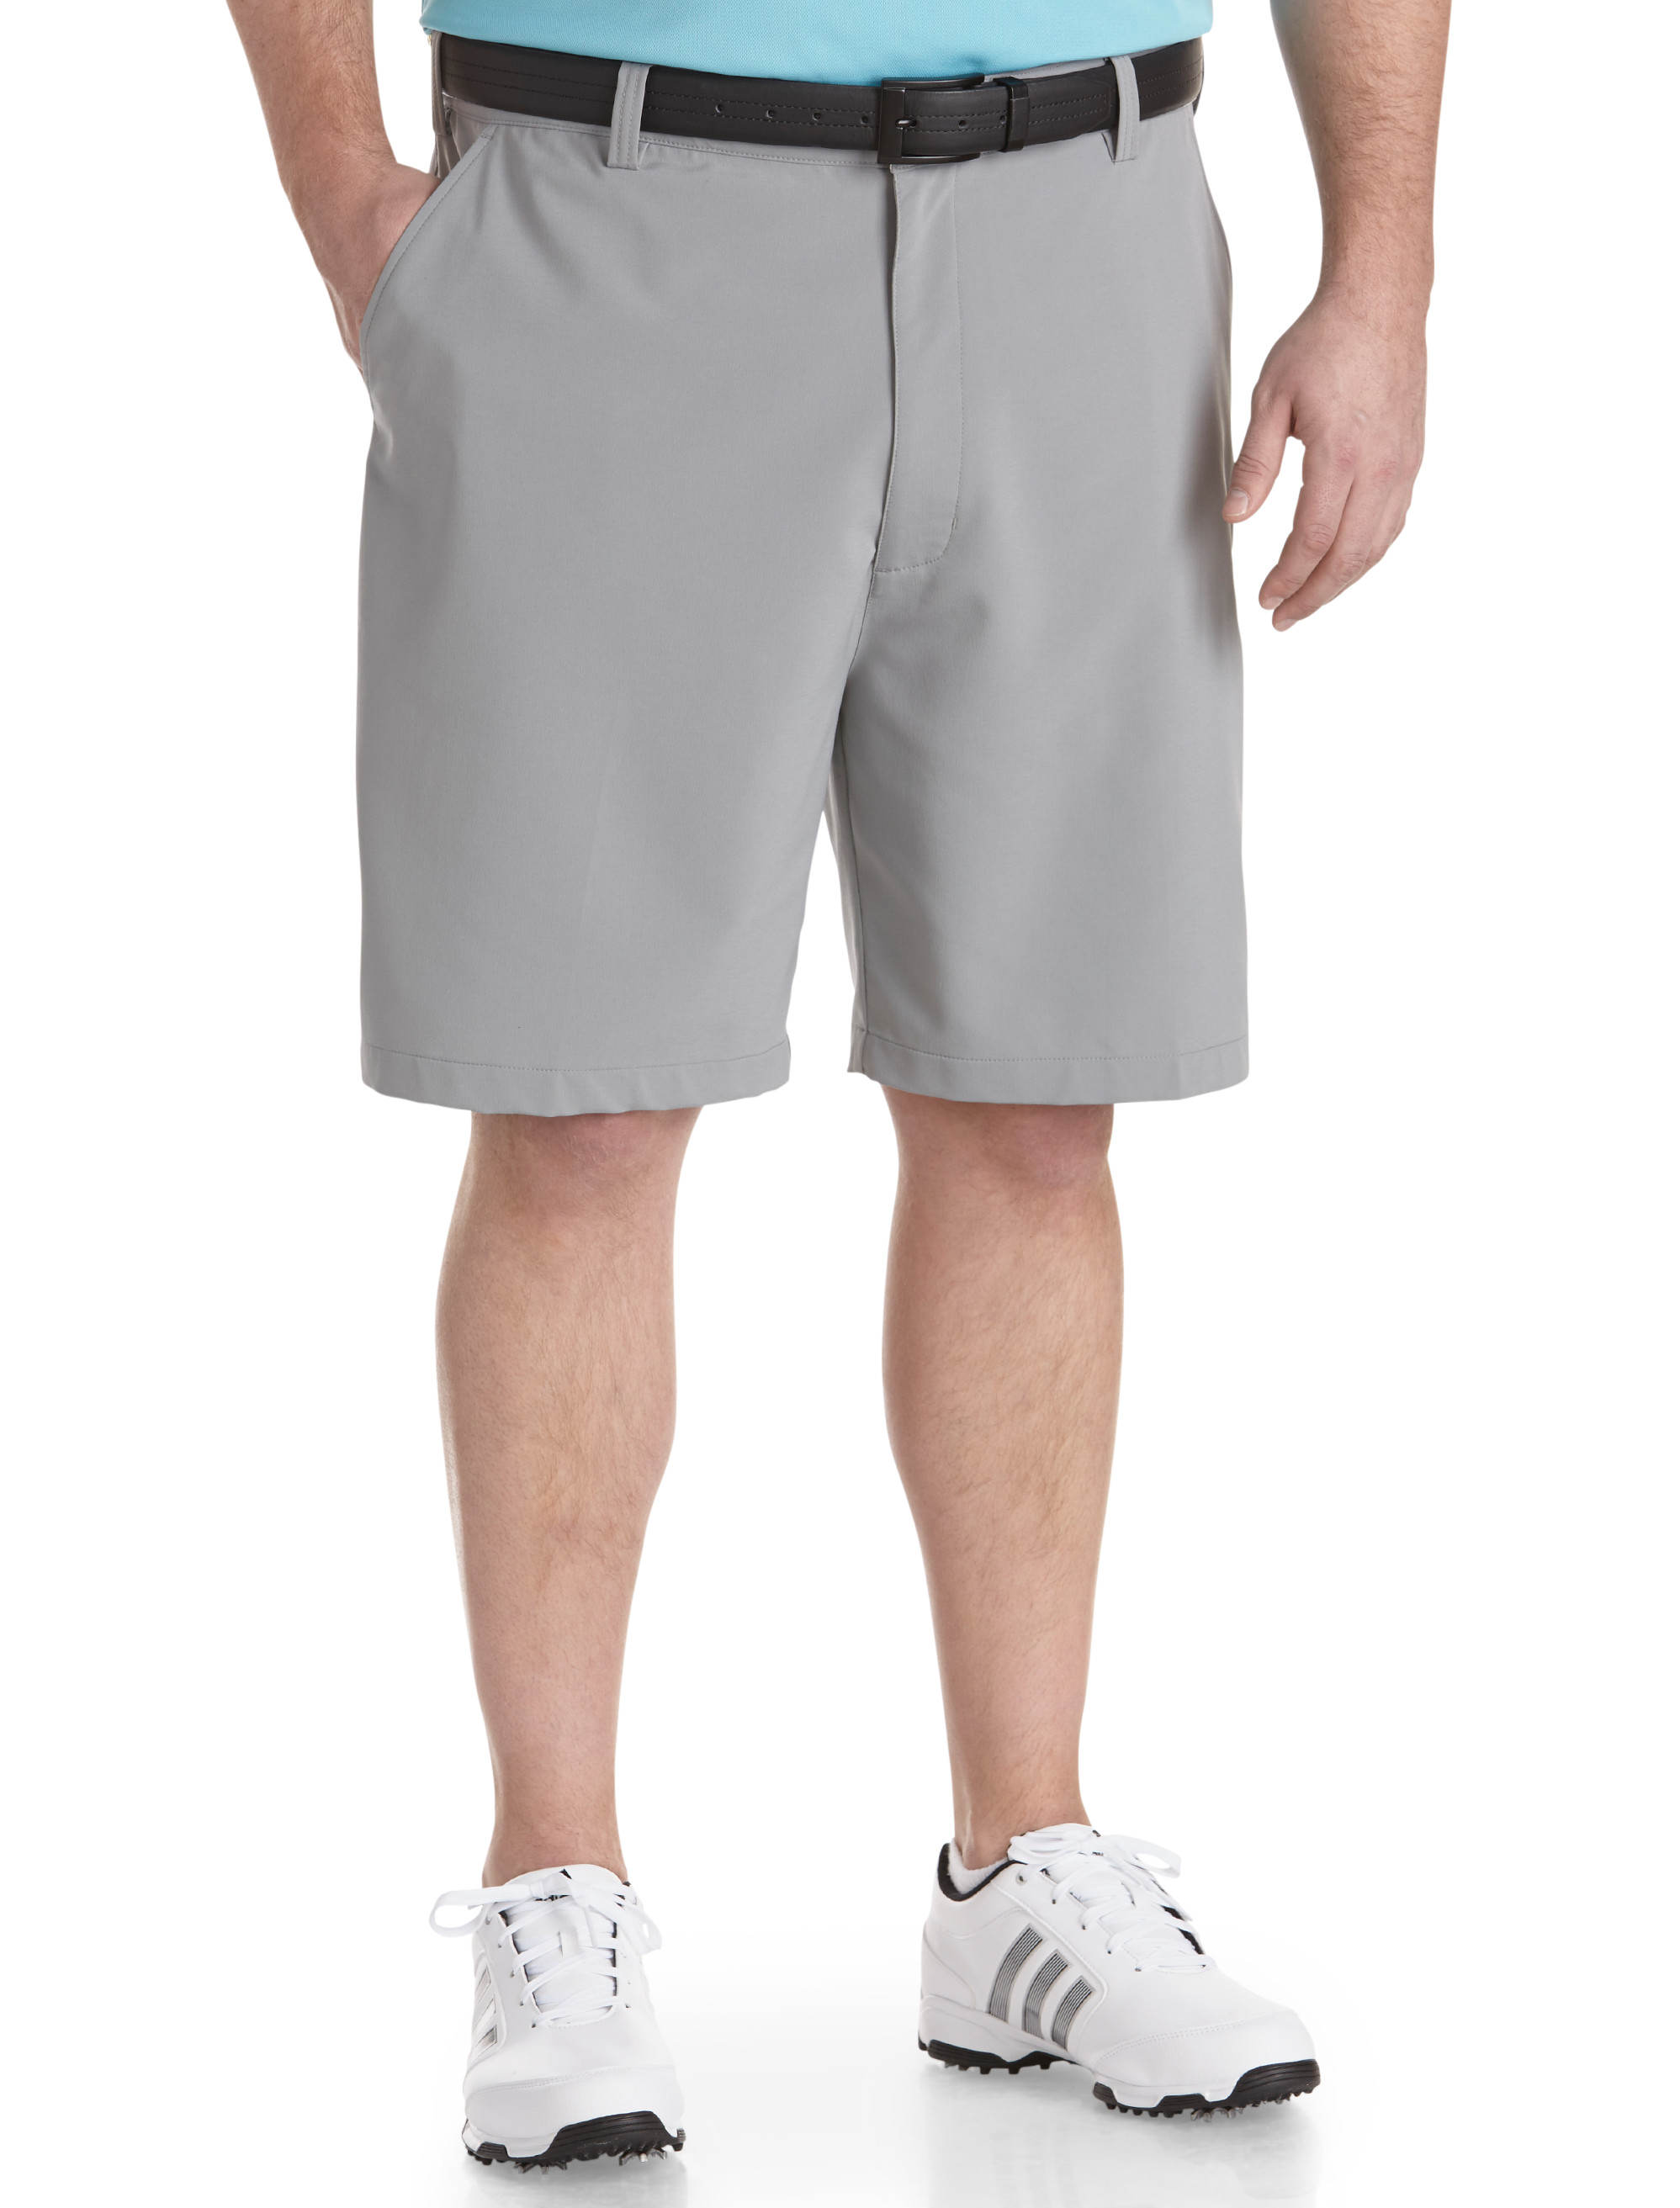 dxl reebok golf shorts